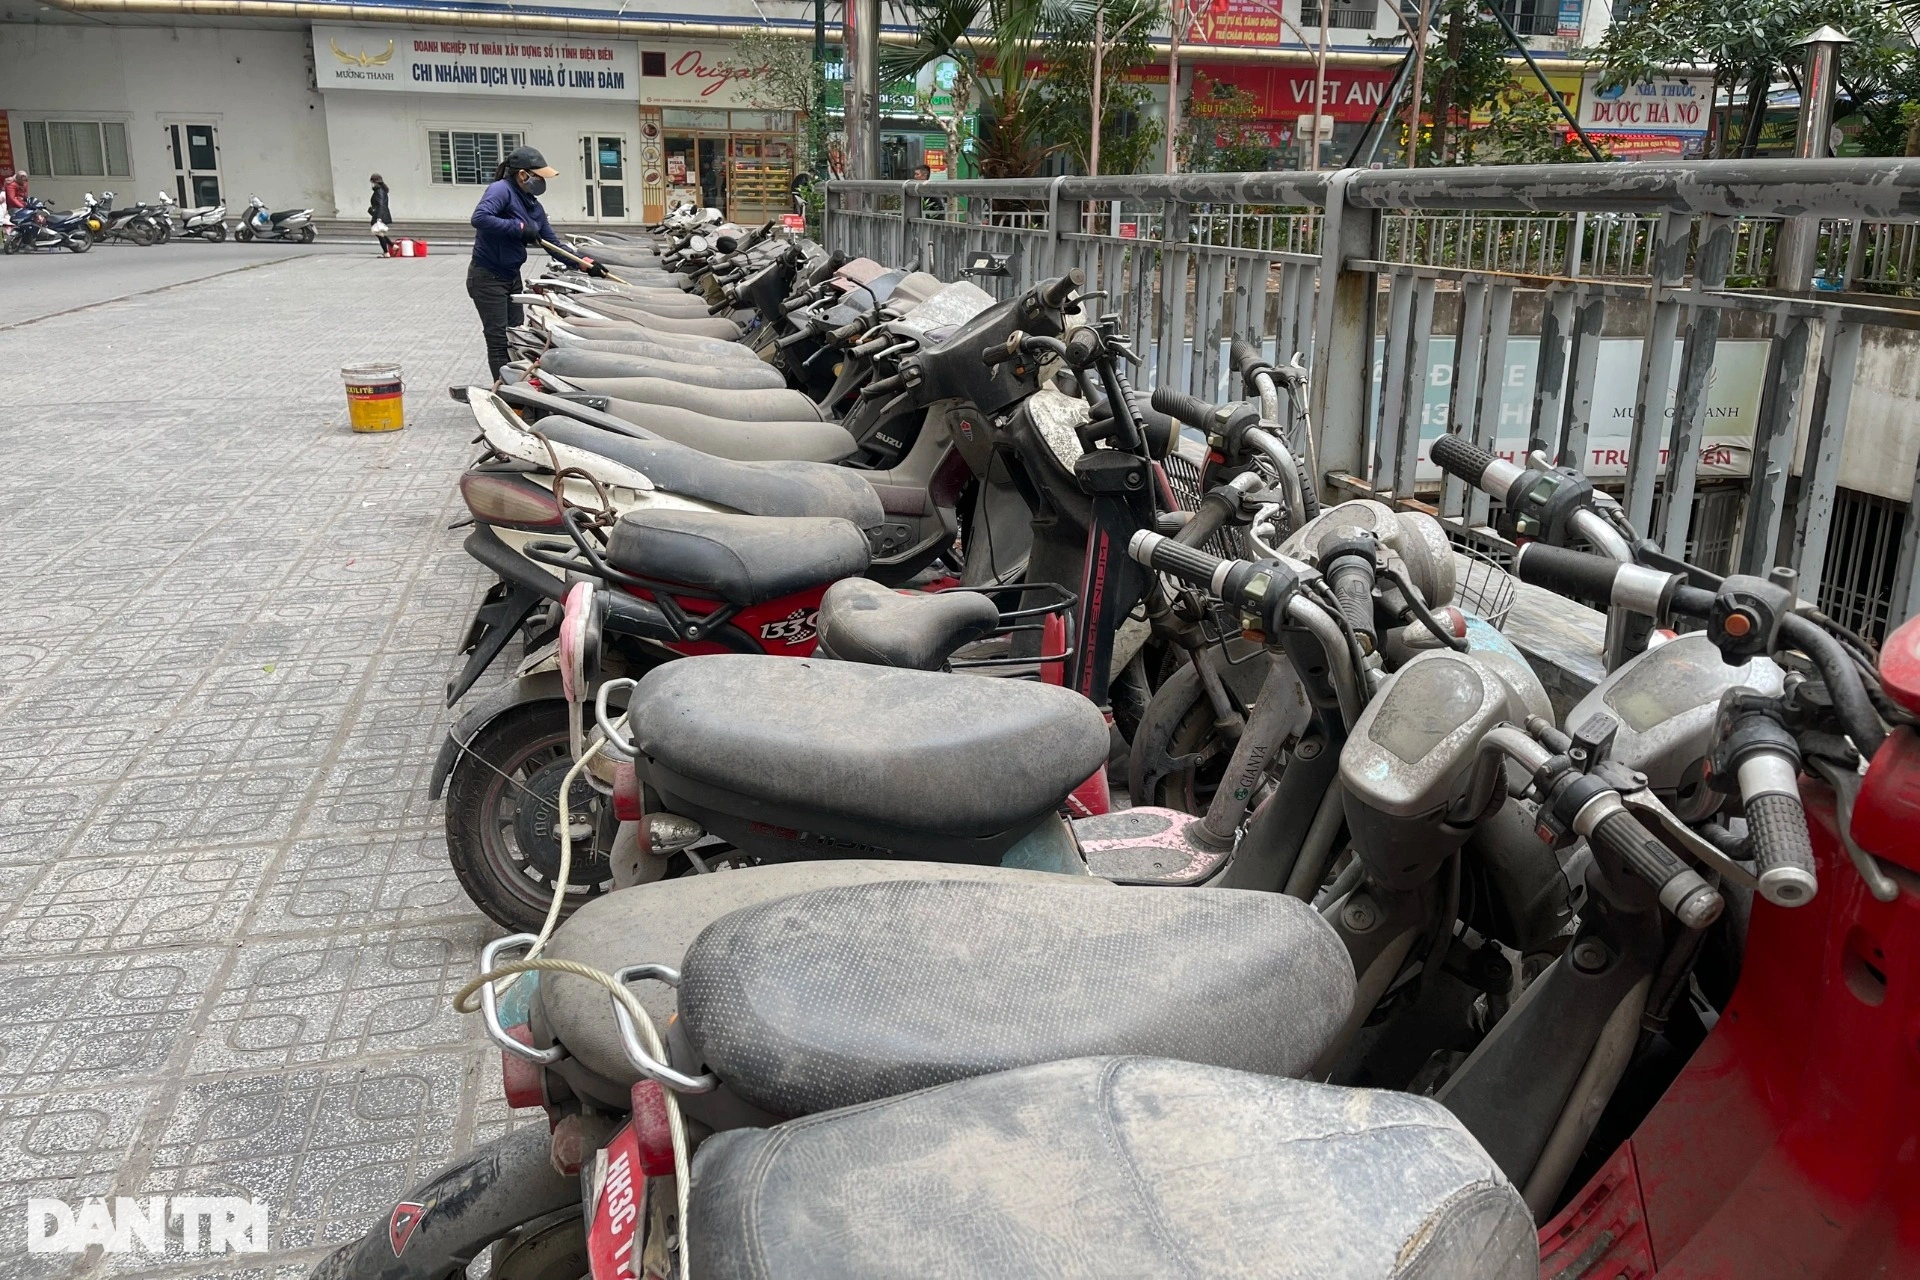 Thực hư thông tin hàng trăm xe máy cũ ở Linh Đàm được đưa đi từ thiện - 4